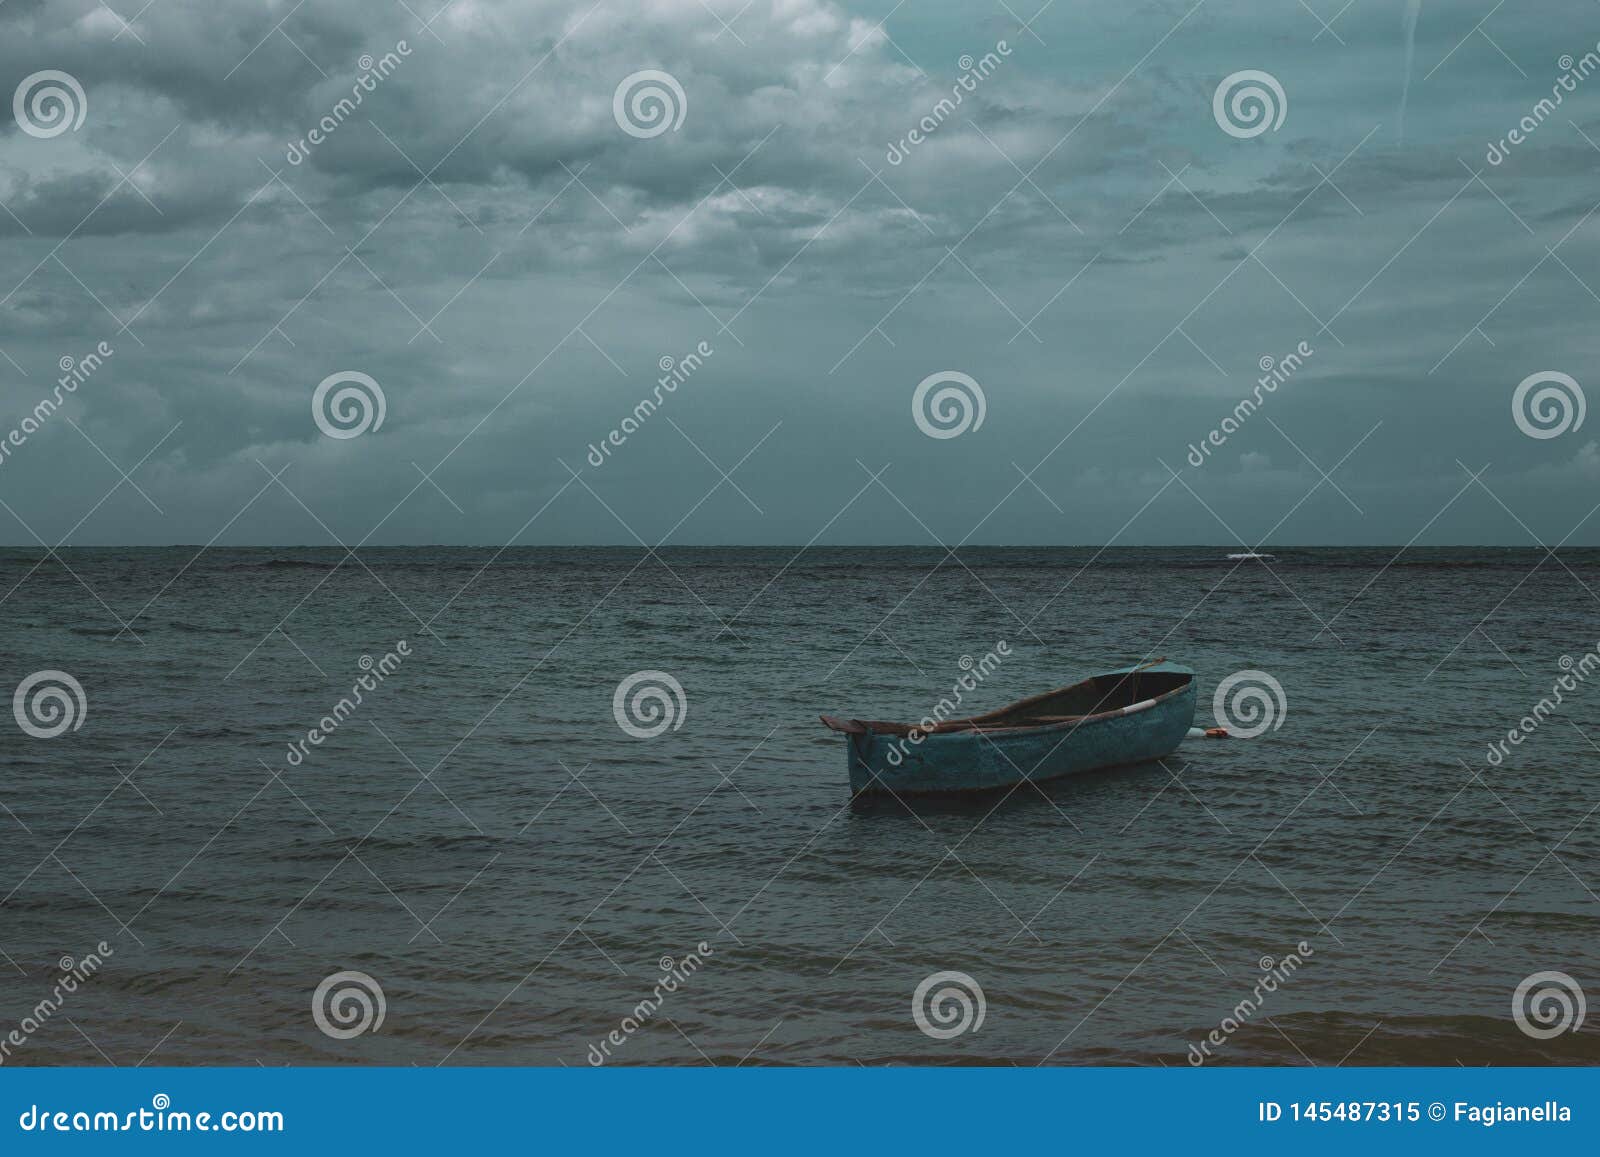 a lonely boat in the sea in playa ballenas, las terrenas, dominican republic